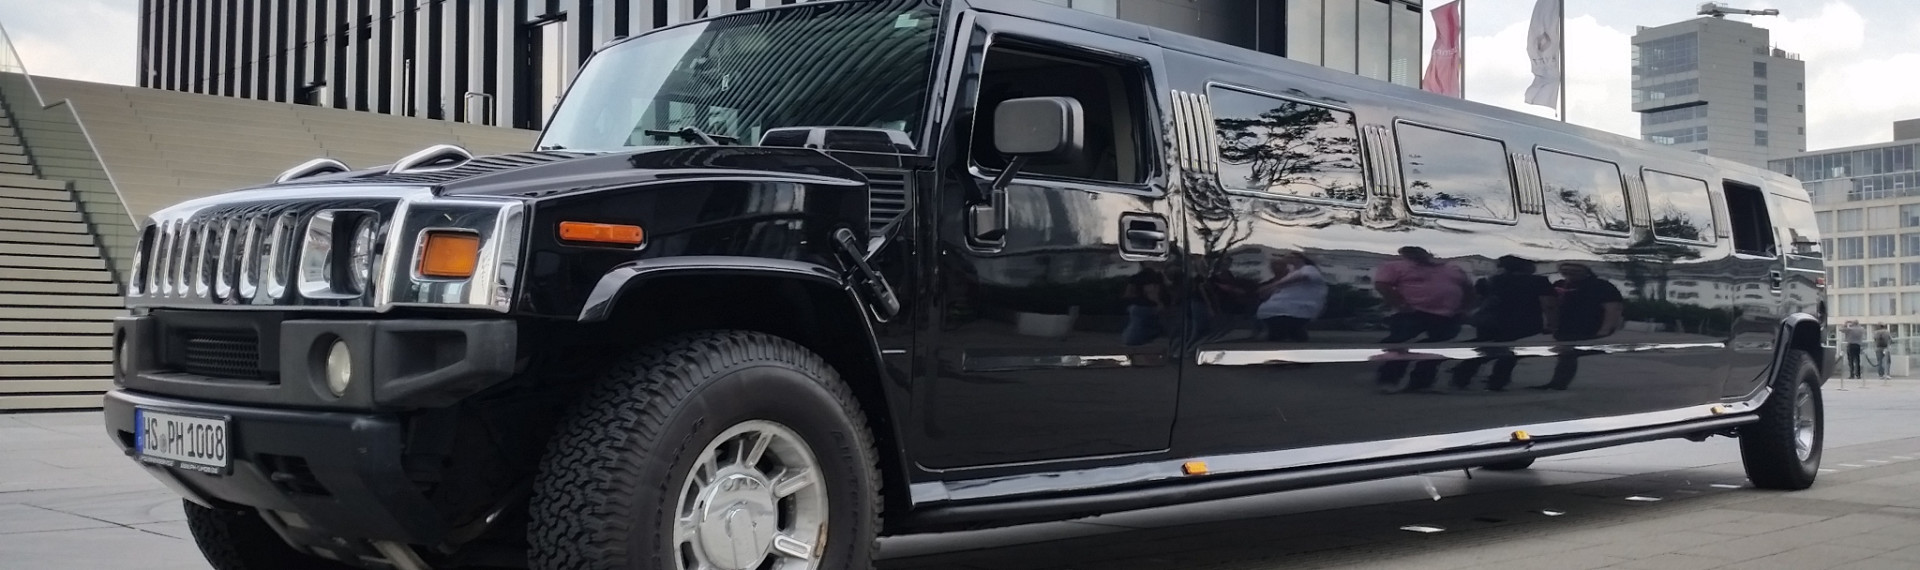 Strip Limousine Hummer à Bordeaux - du luxe pour votre EVG | EVG.fr